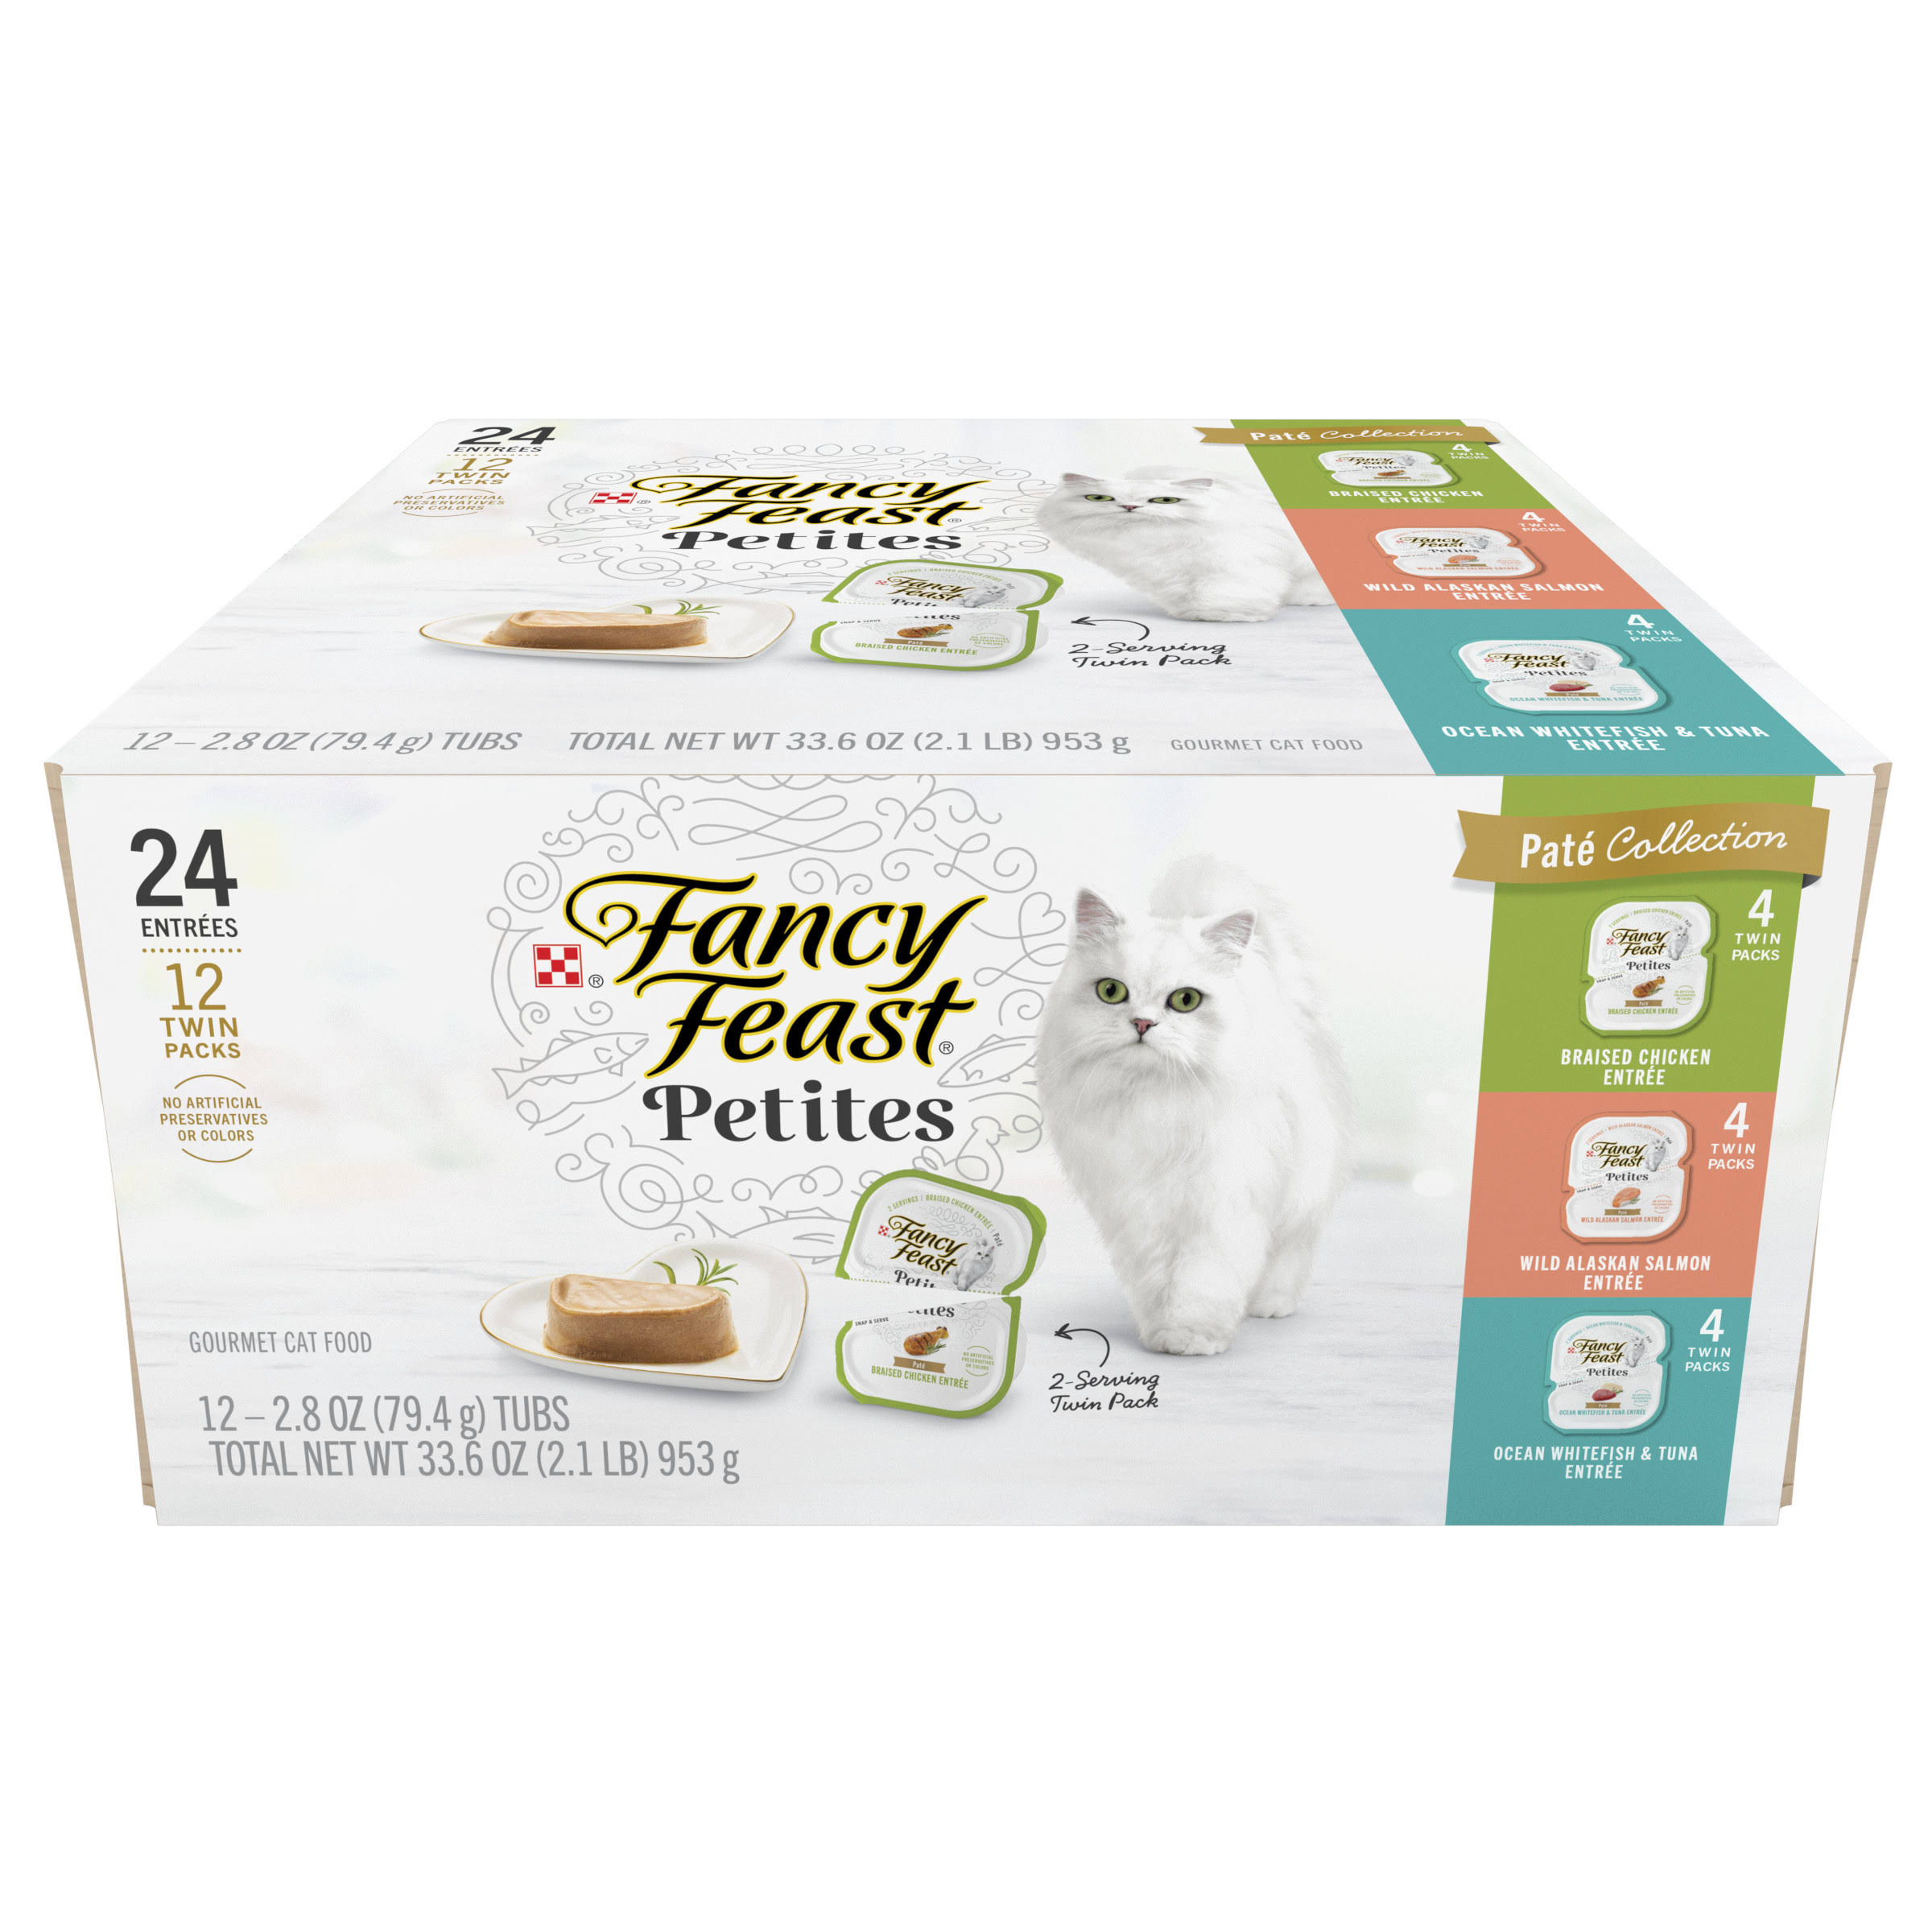 Purina Fancy Feast Gourmet Wet Cat Food Variety Pack, Petites Pate Collection, Break-apart Tubs, 24 Servings - 2.8 oz Tubs